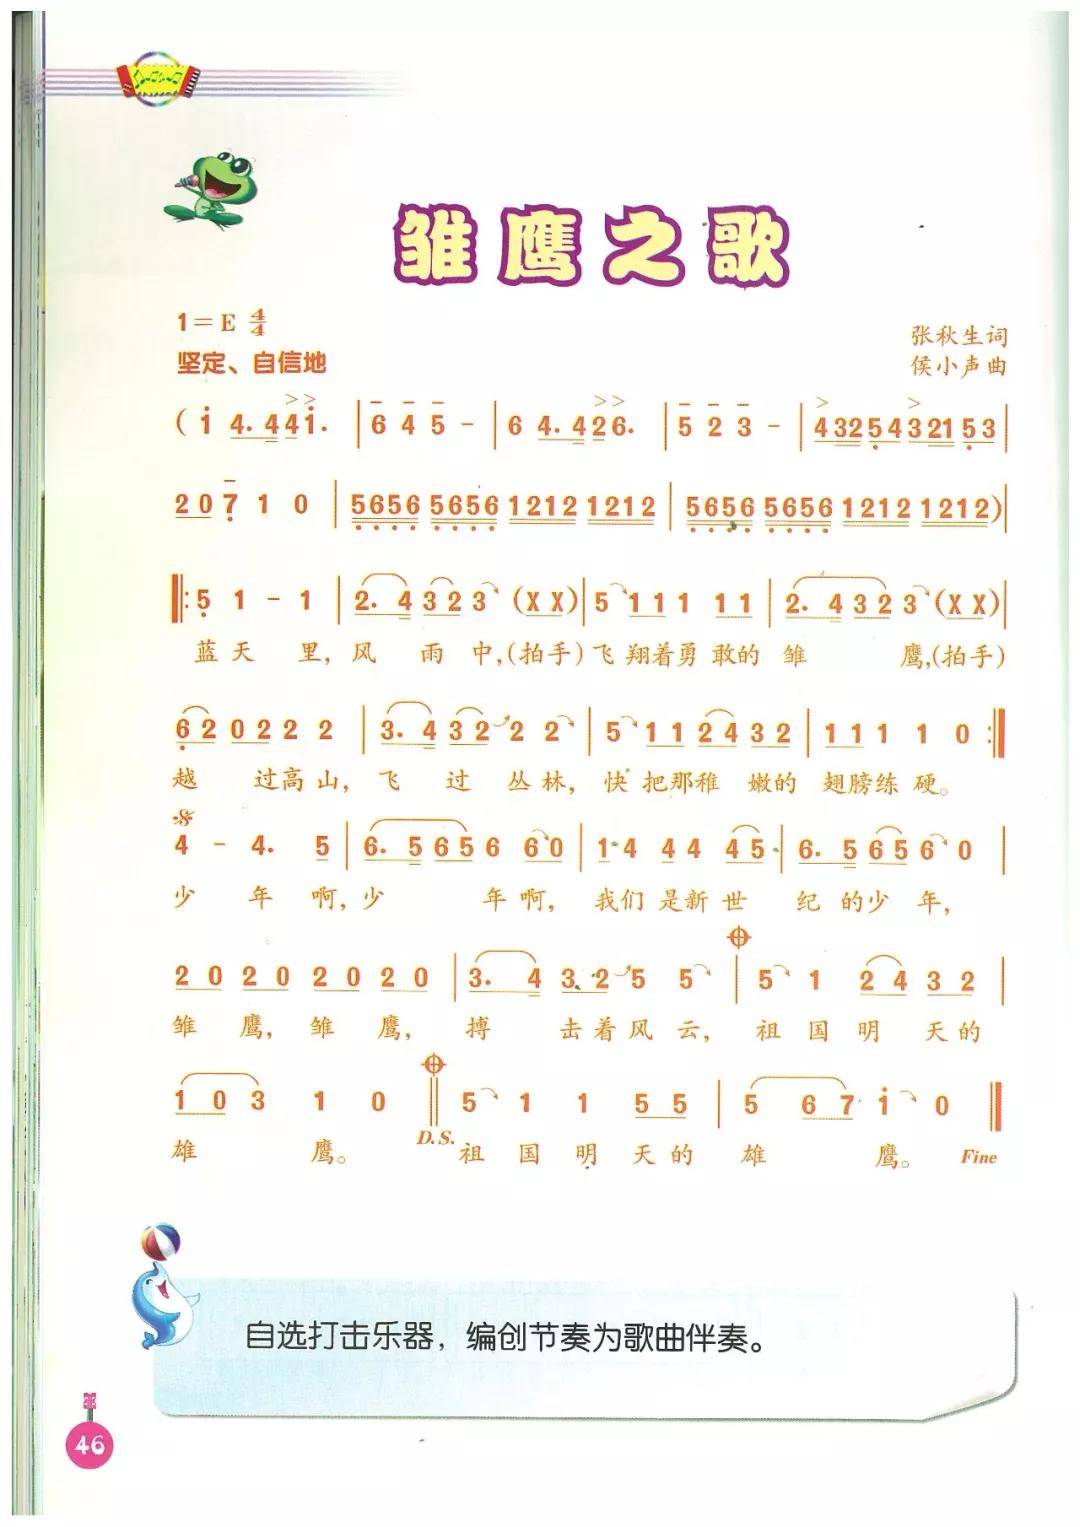 《人音版音乐(简谱)五年级上册电子课本》高清图片版_资源